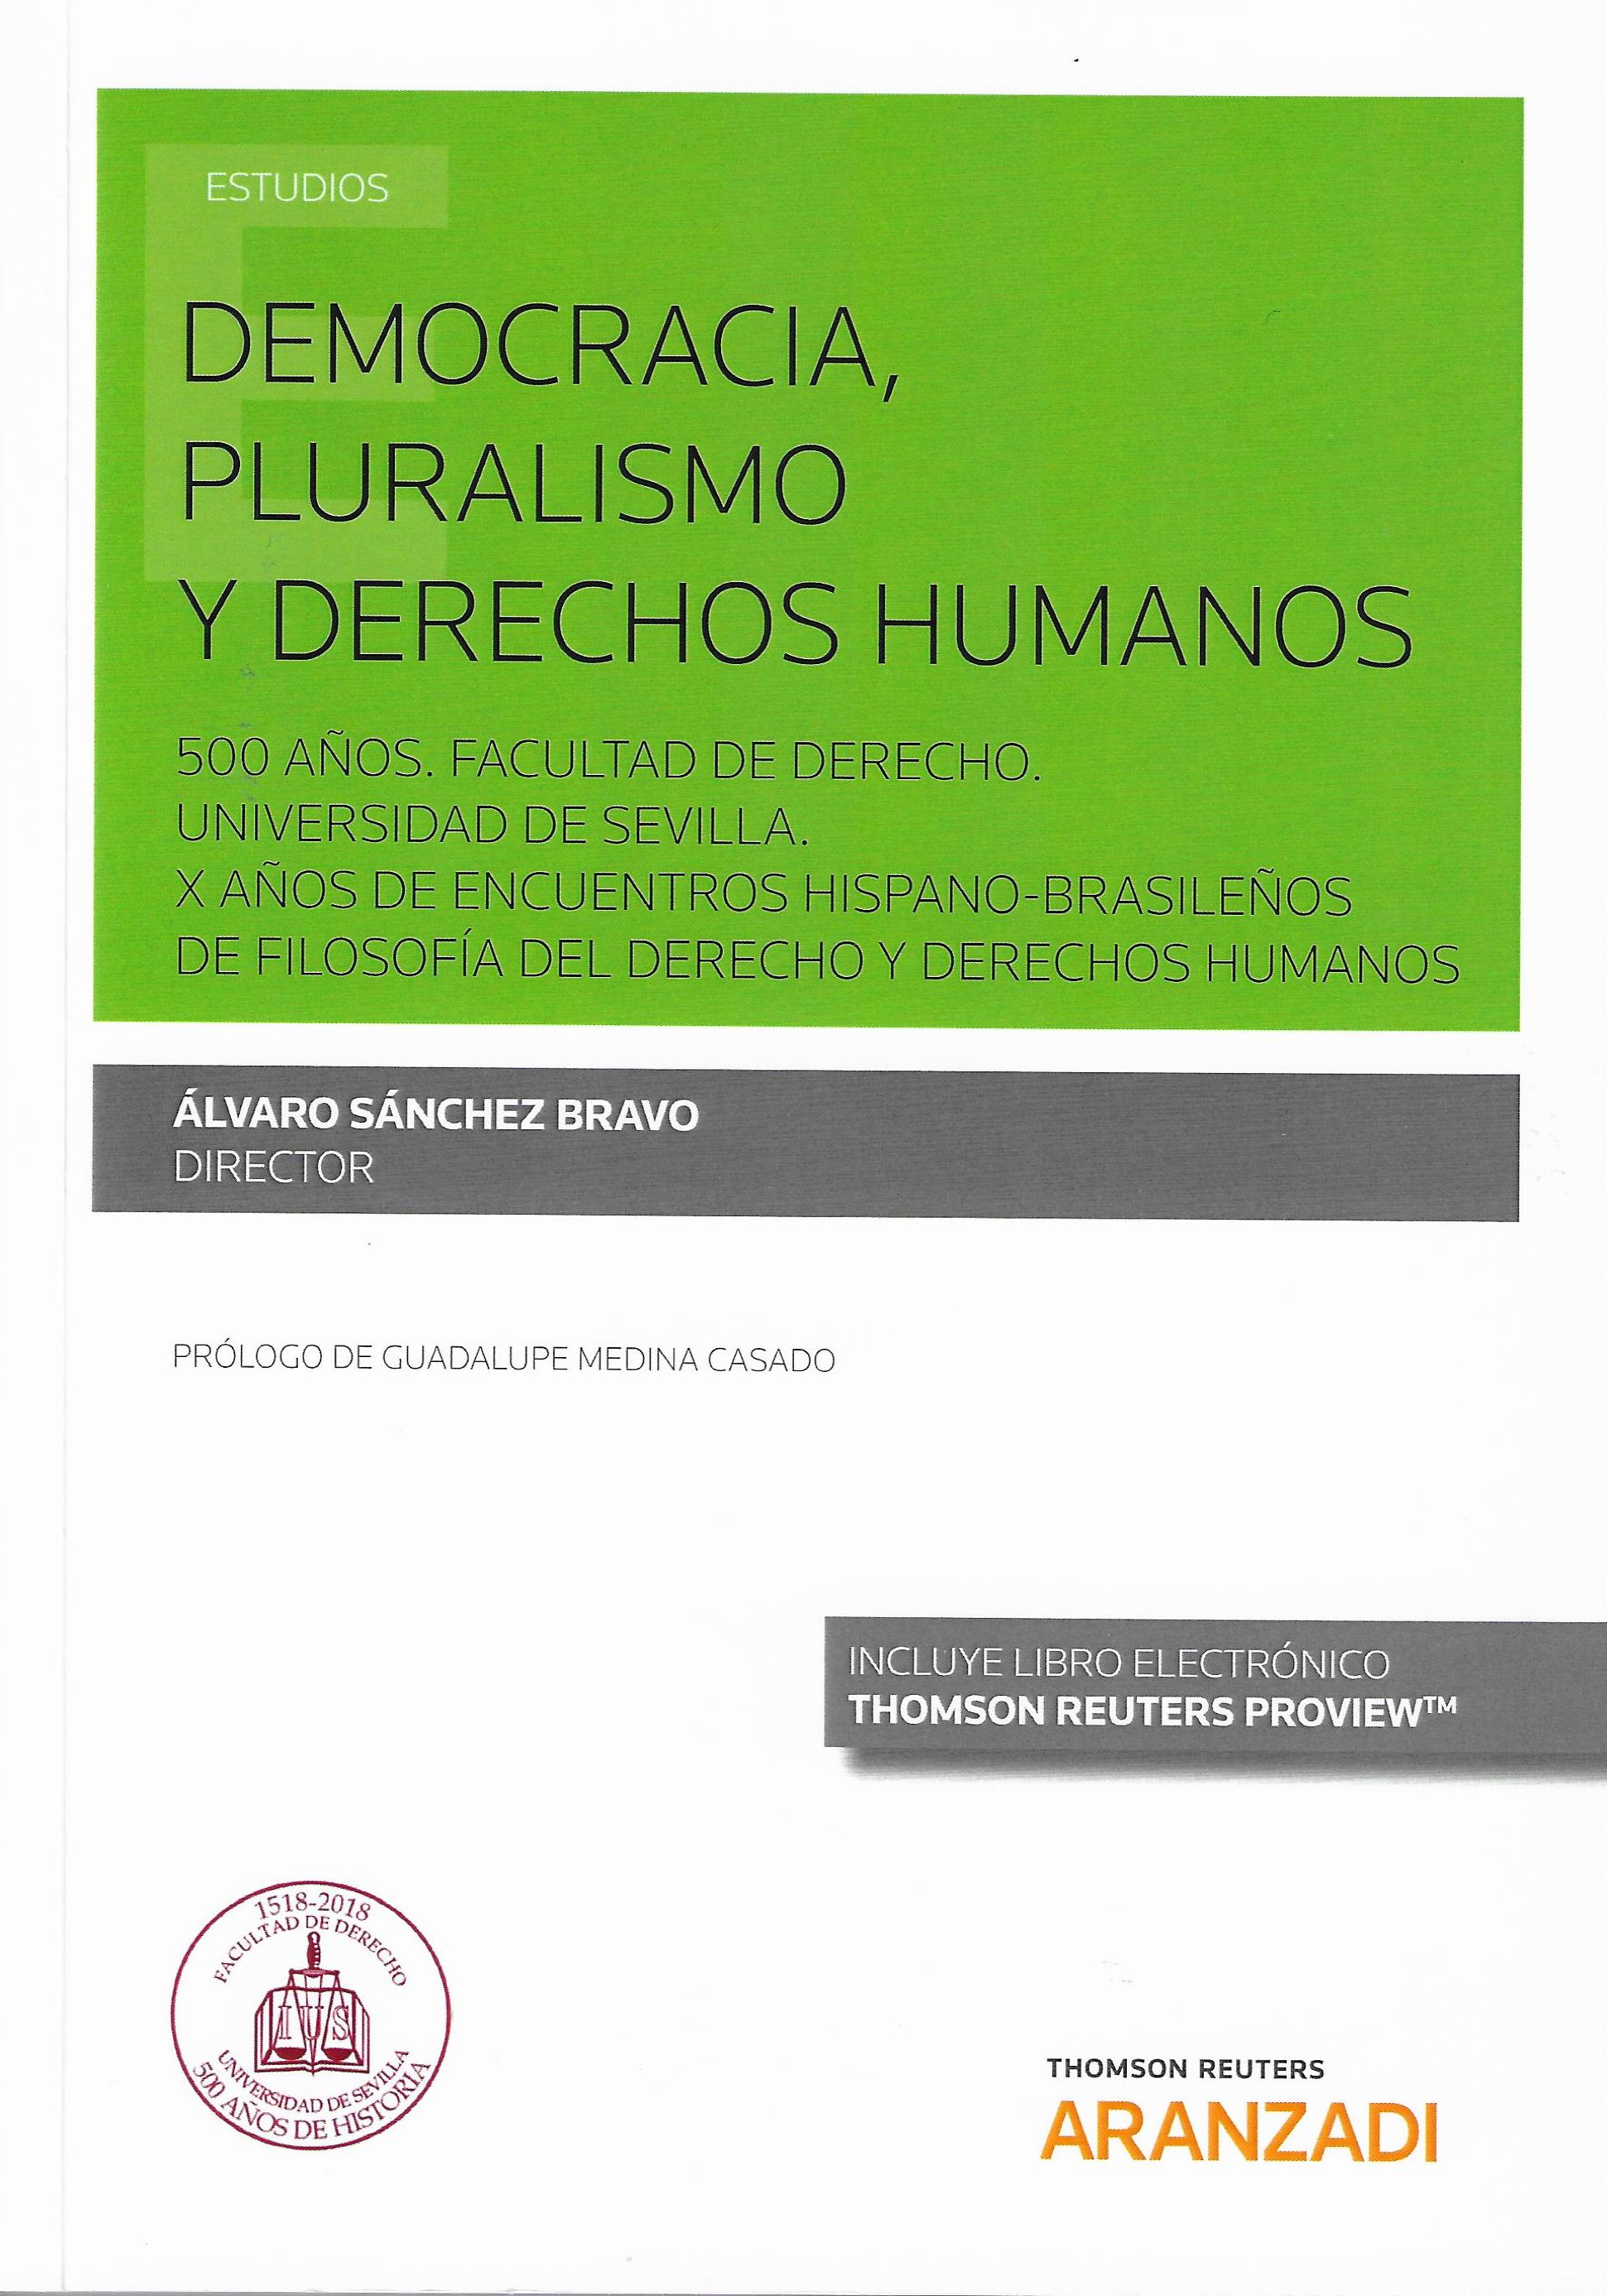 Imagen de portada del libro Democracia, pluralismo y derechos humanos